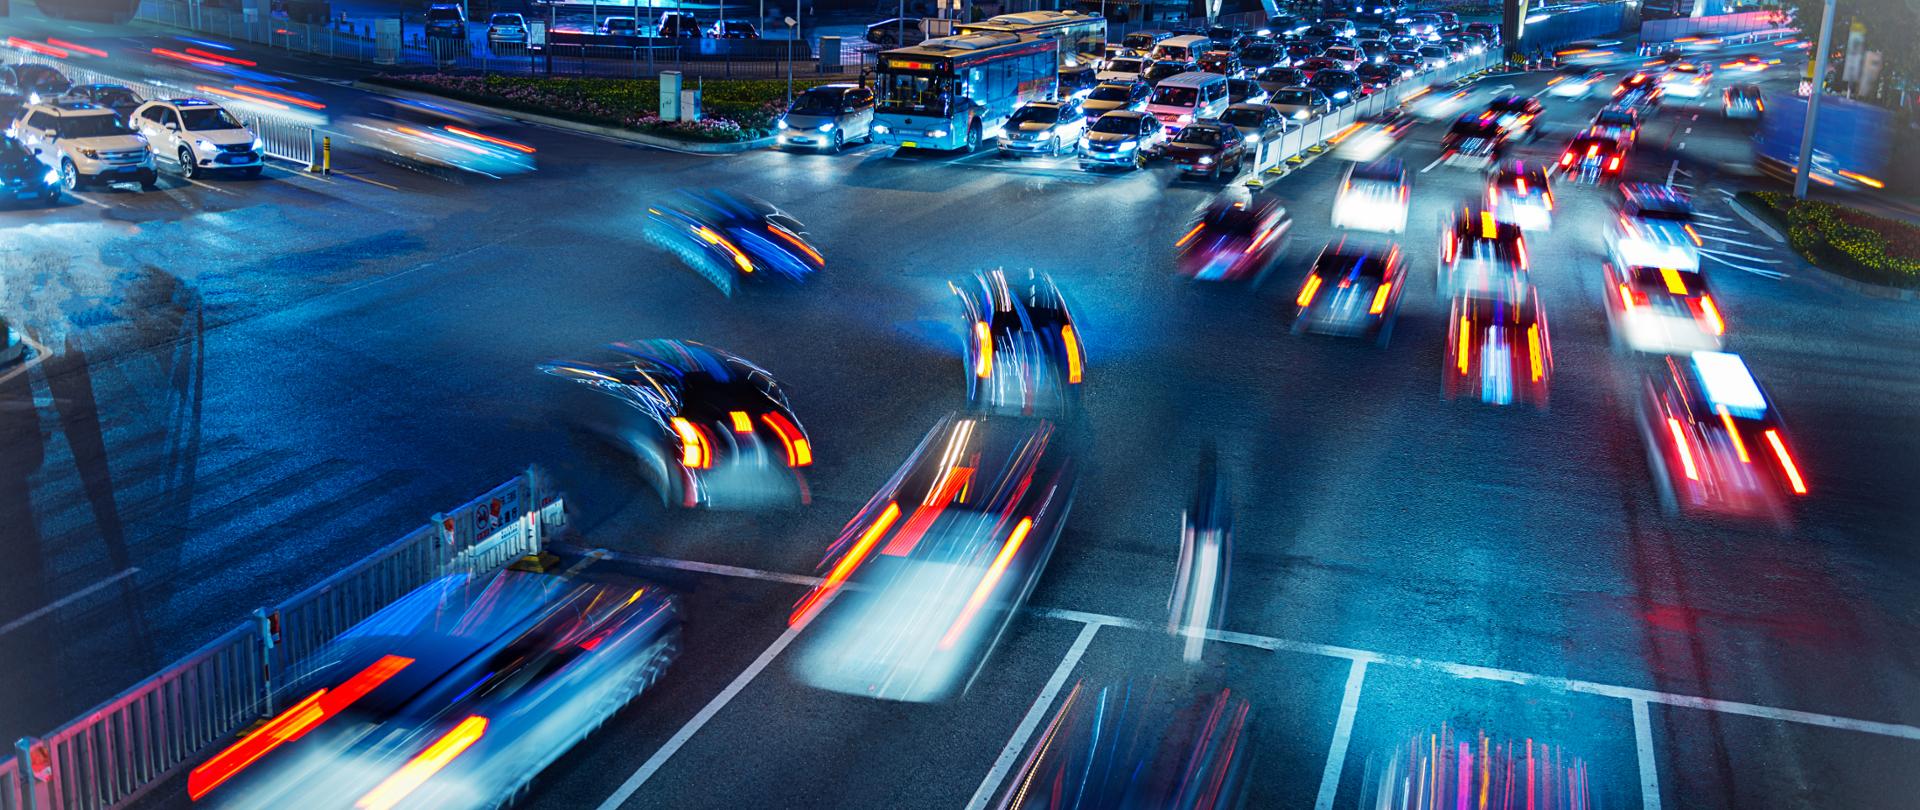 Zdjęcie skrzyżowania drogowego (po zmroku) - widoczne kolorowe światła samochodów jadących w różne strony.